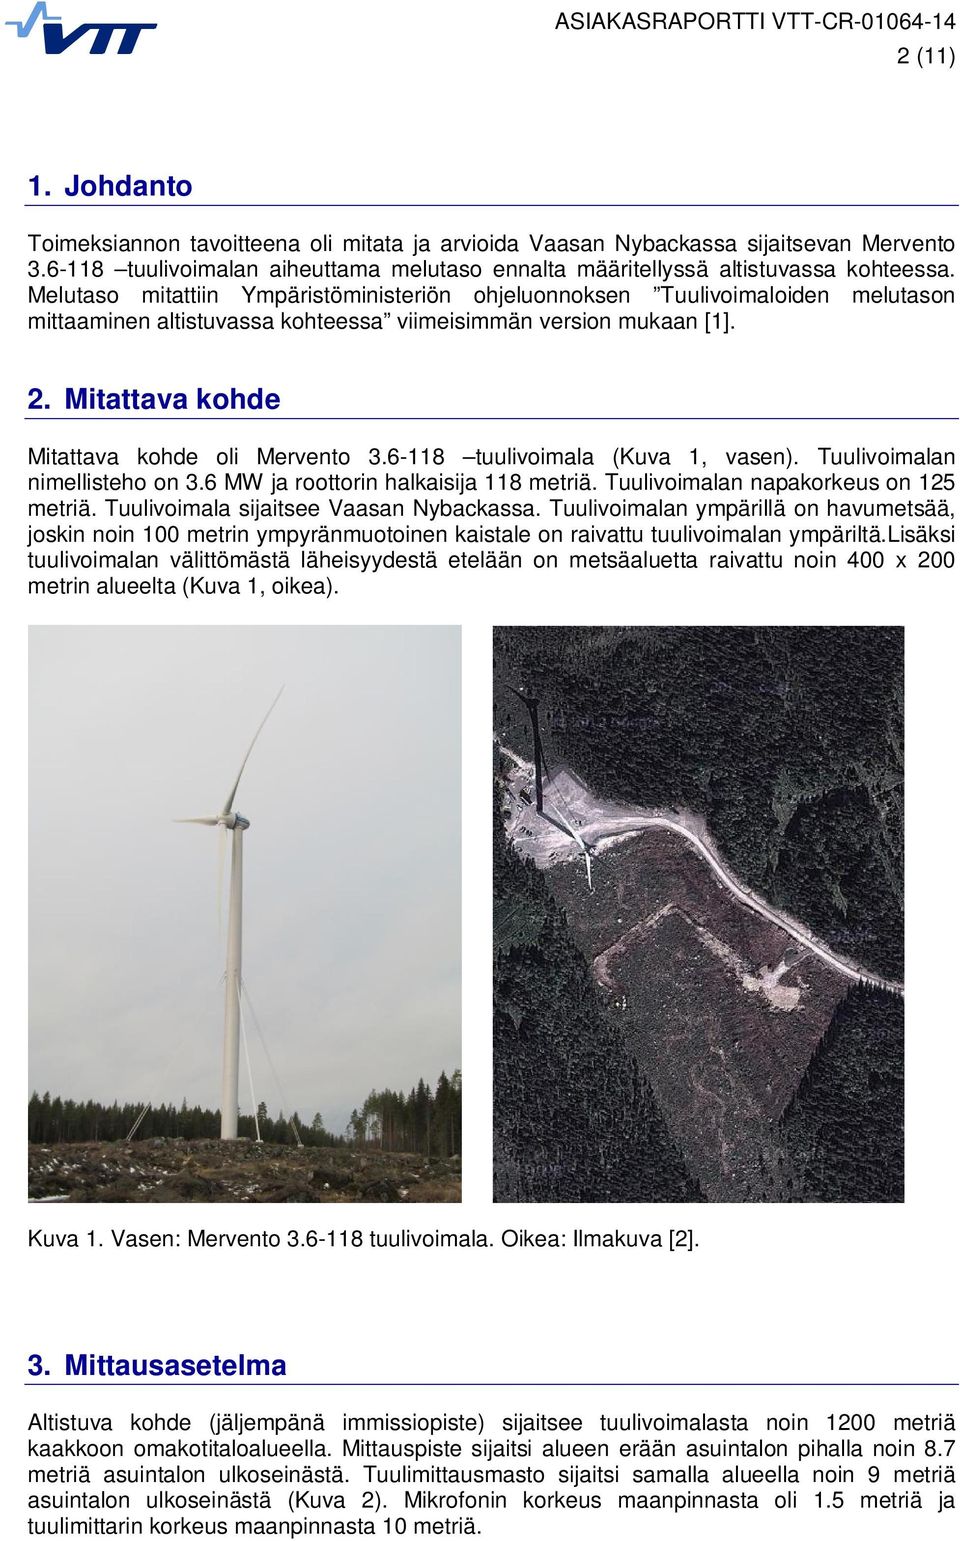 6-118 tuulivoimala (Kuva 1, vasen). Tuulivoimalan nimellisteho on 3.6 MW ja roottorin halkaisija 118 metriä. Tuulivoimalan napakorkeus on 125 metriä. Tuulivoimala sijaitsee Vaasan Nybackassa.